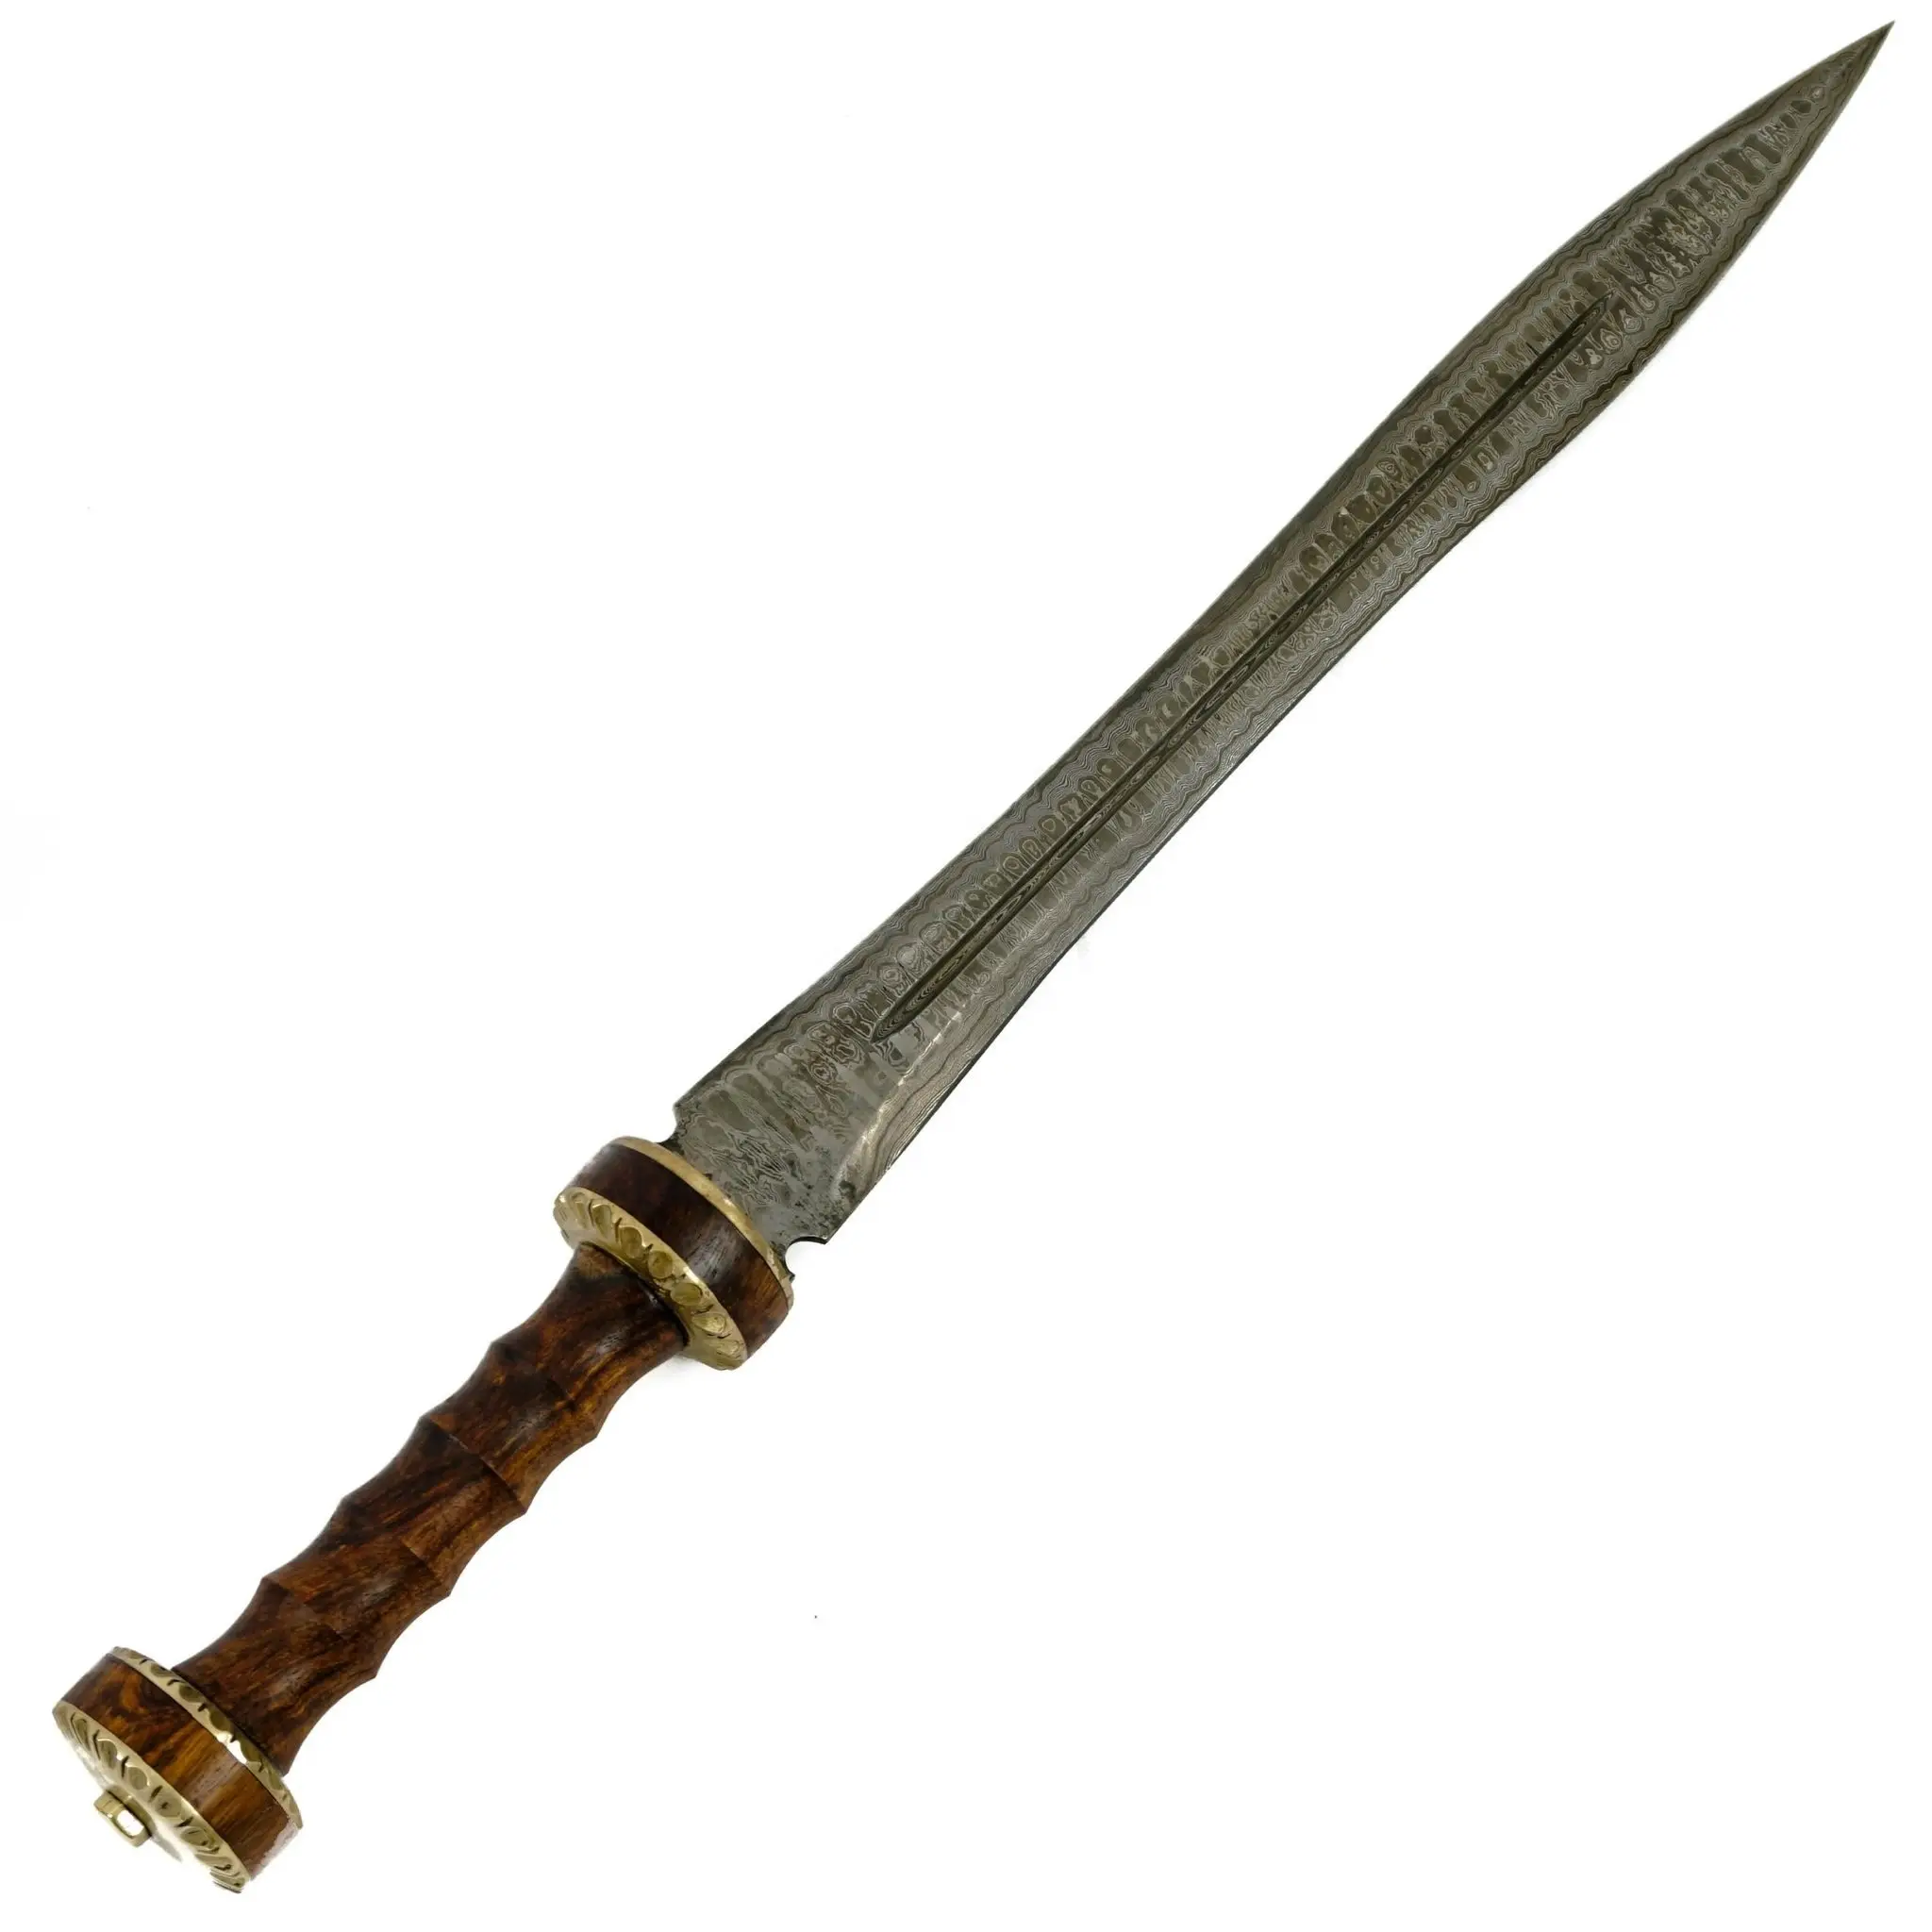 DAMASCUS STEEL HANDMADE DOUBLE EDGE ROMAN GLADIUS SWORD